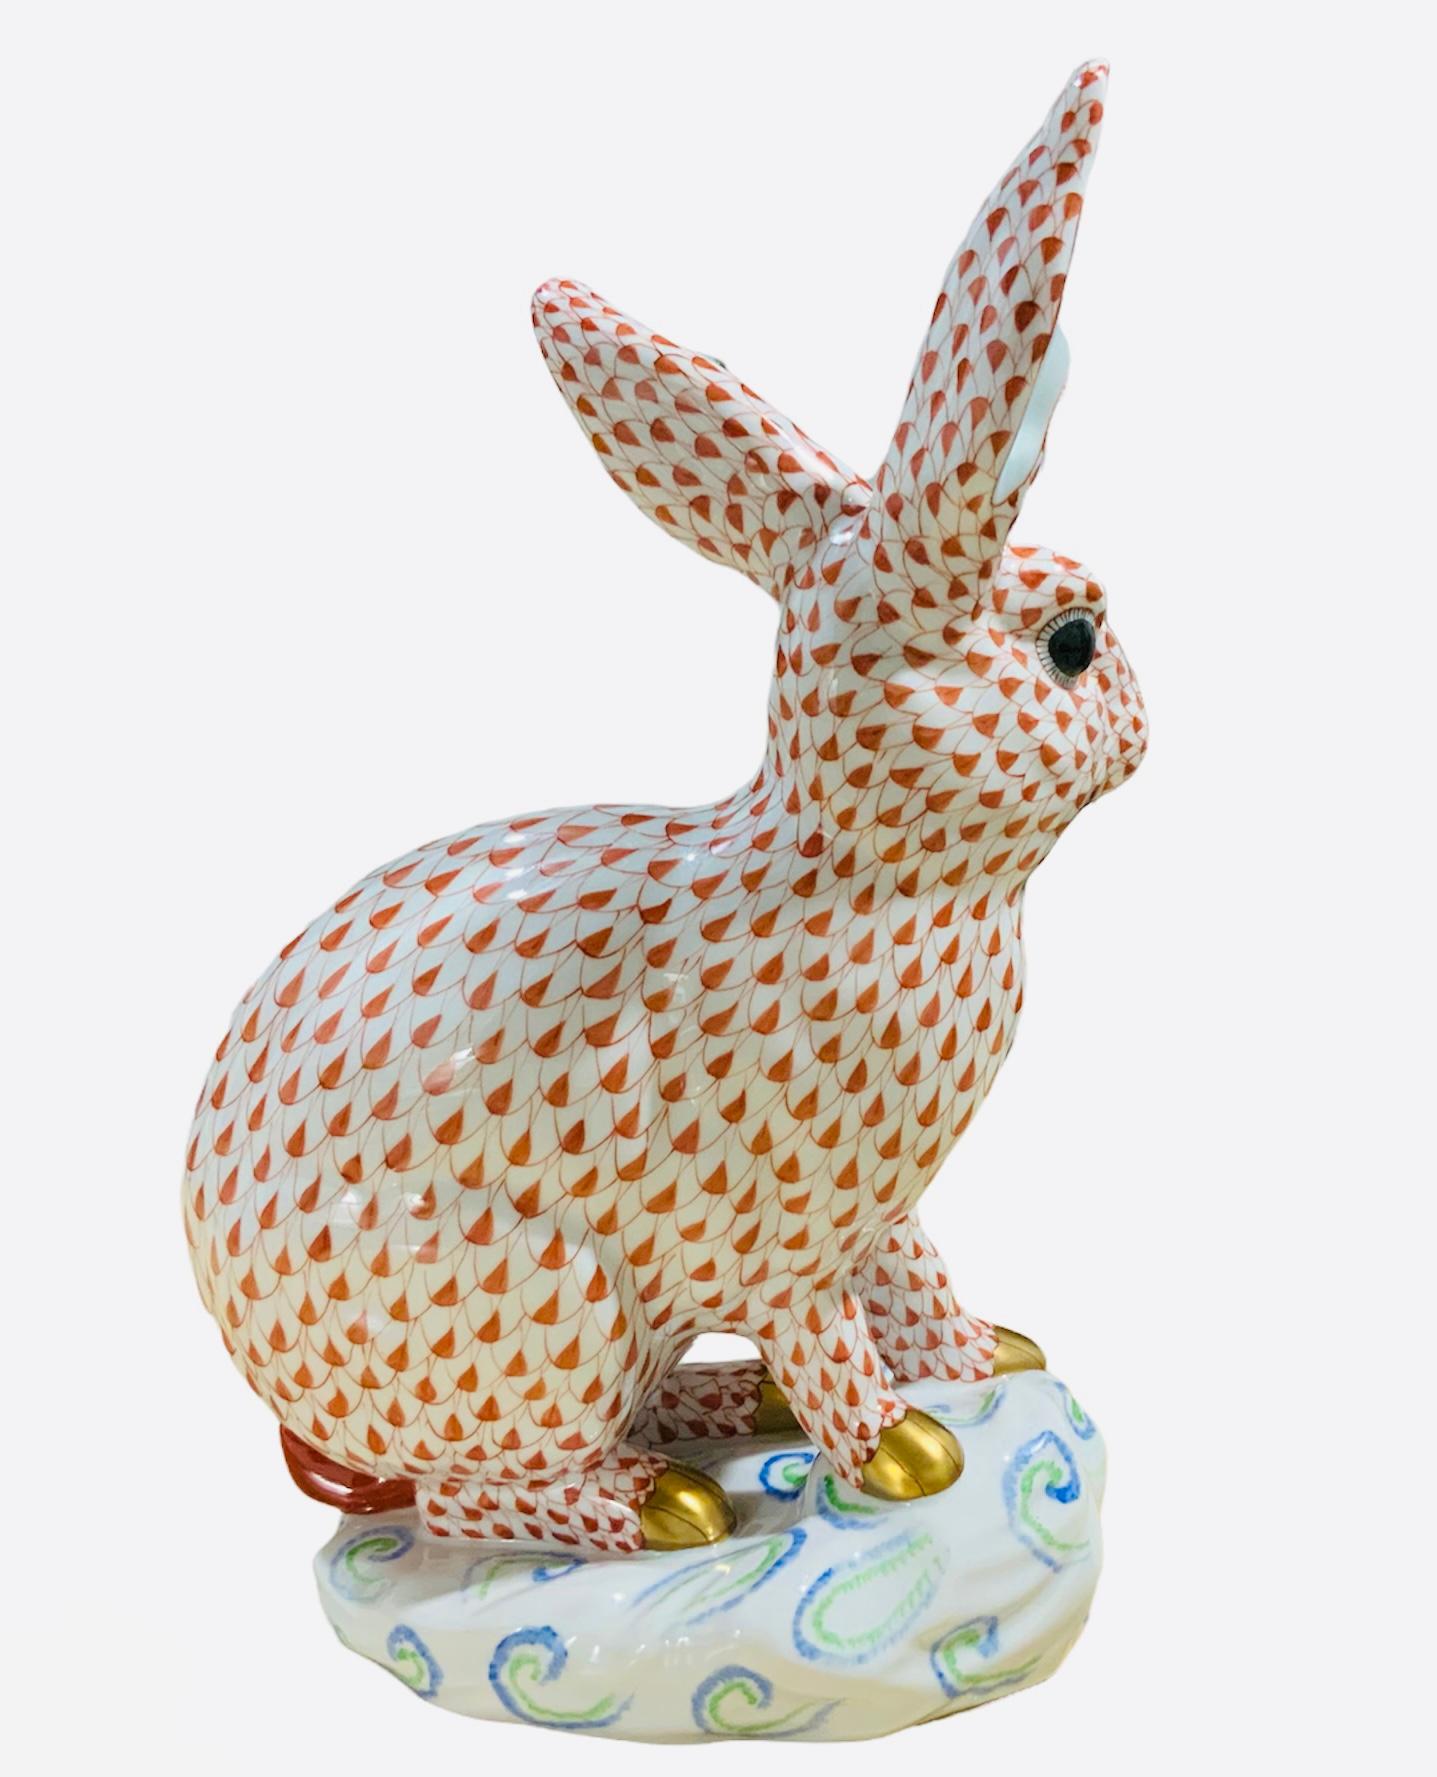 Il s'agit d'un grand lapin en porcelaine Herend peint à la main, assis au-dessus d'un rocher blanc ovale asymétrique décoré de C-scrolls bleus et verts. Son fond est blanc avec un motif orange de filet en écailles de poisson. L'intérieur des